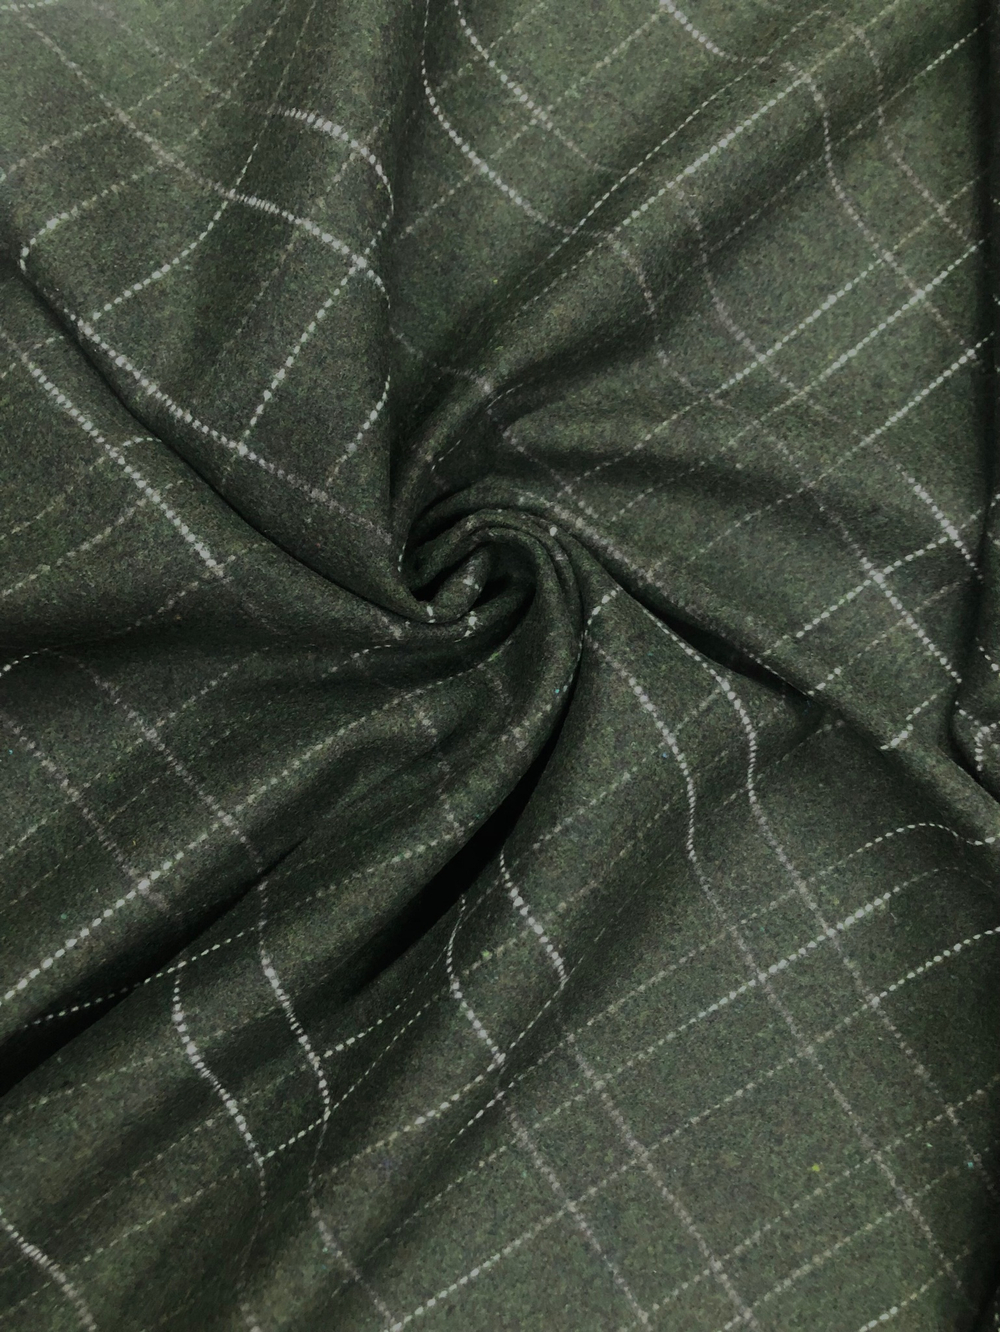 Ткань пальтово-костюмная шерстяная, арт. 327431